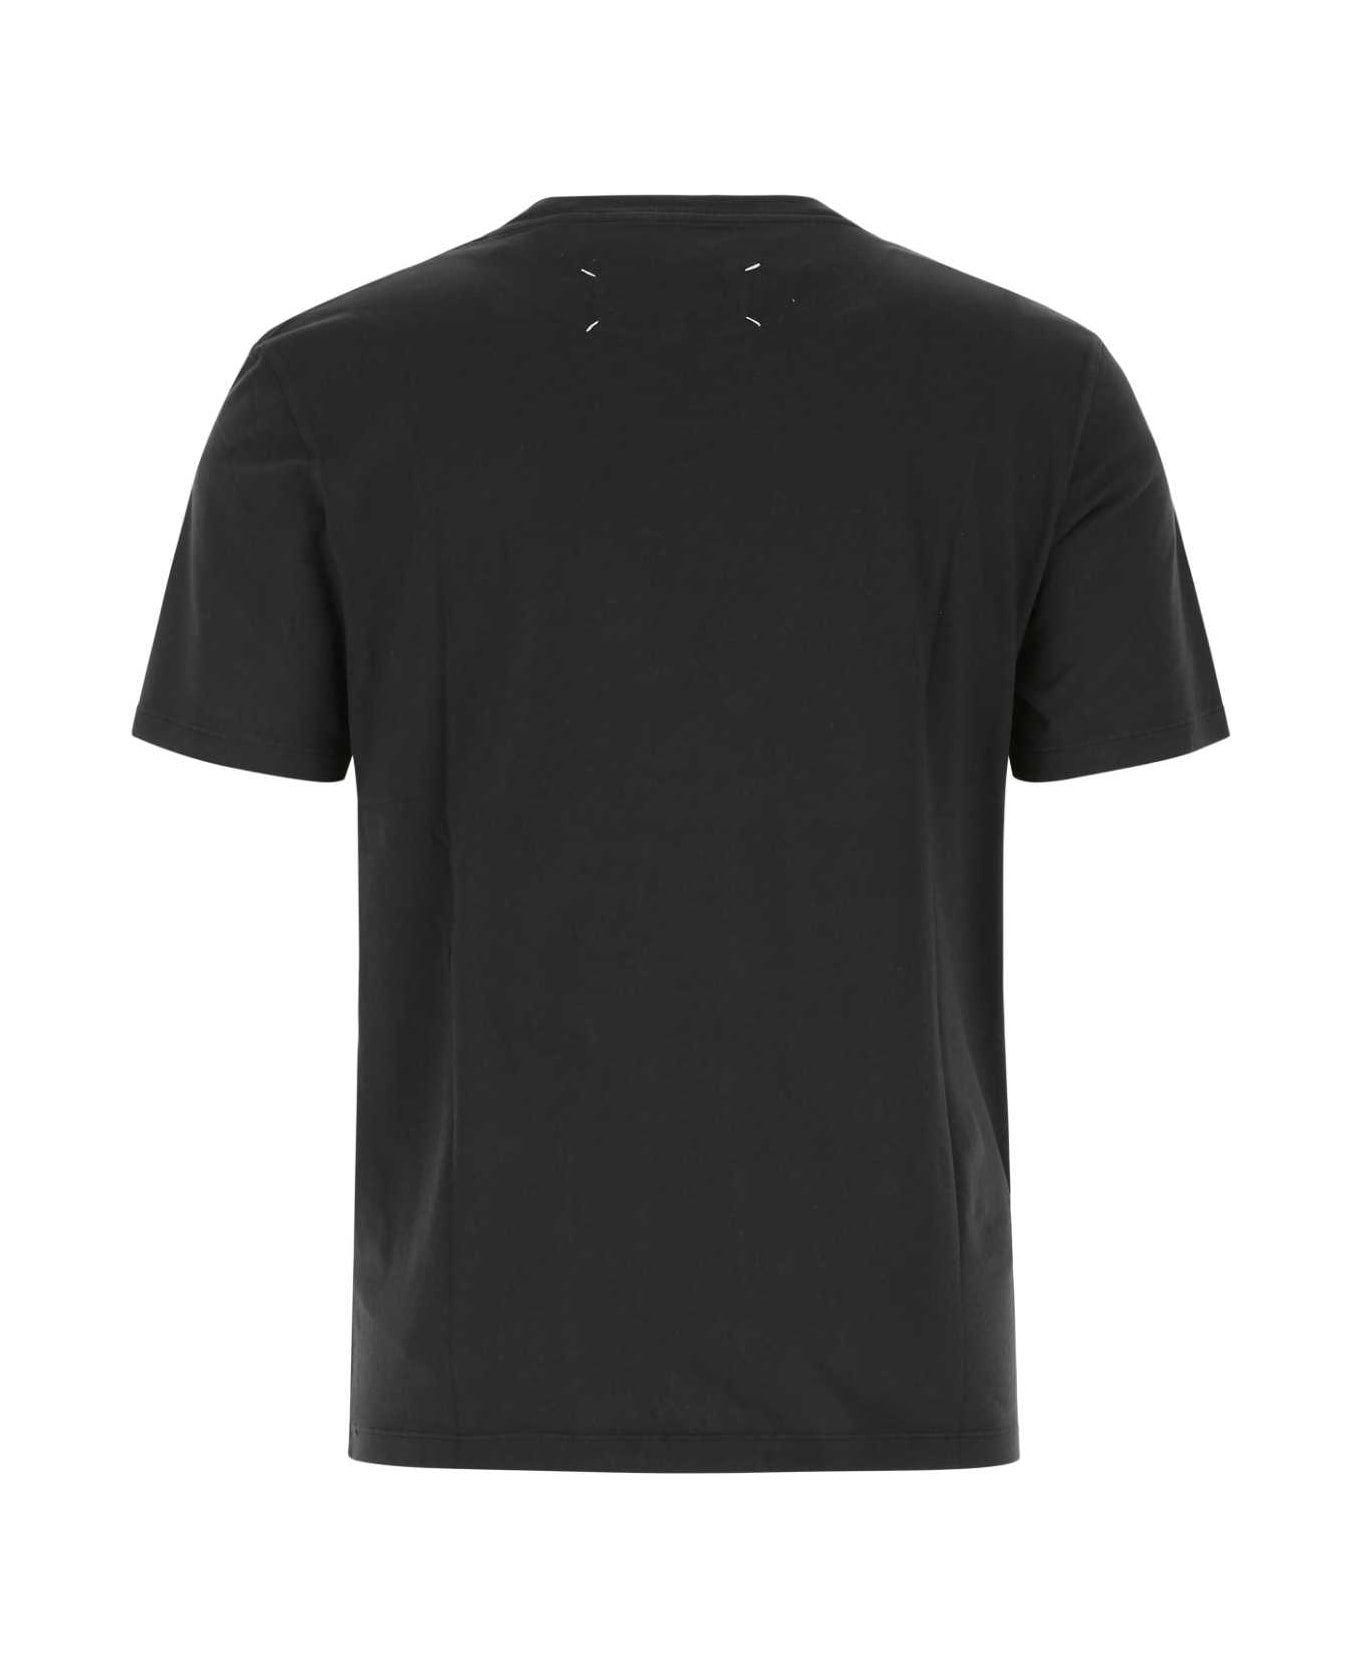 Maison Margiela Black Cotton T-shirt - 855